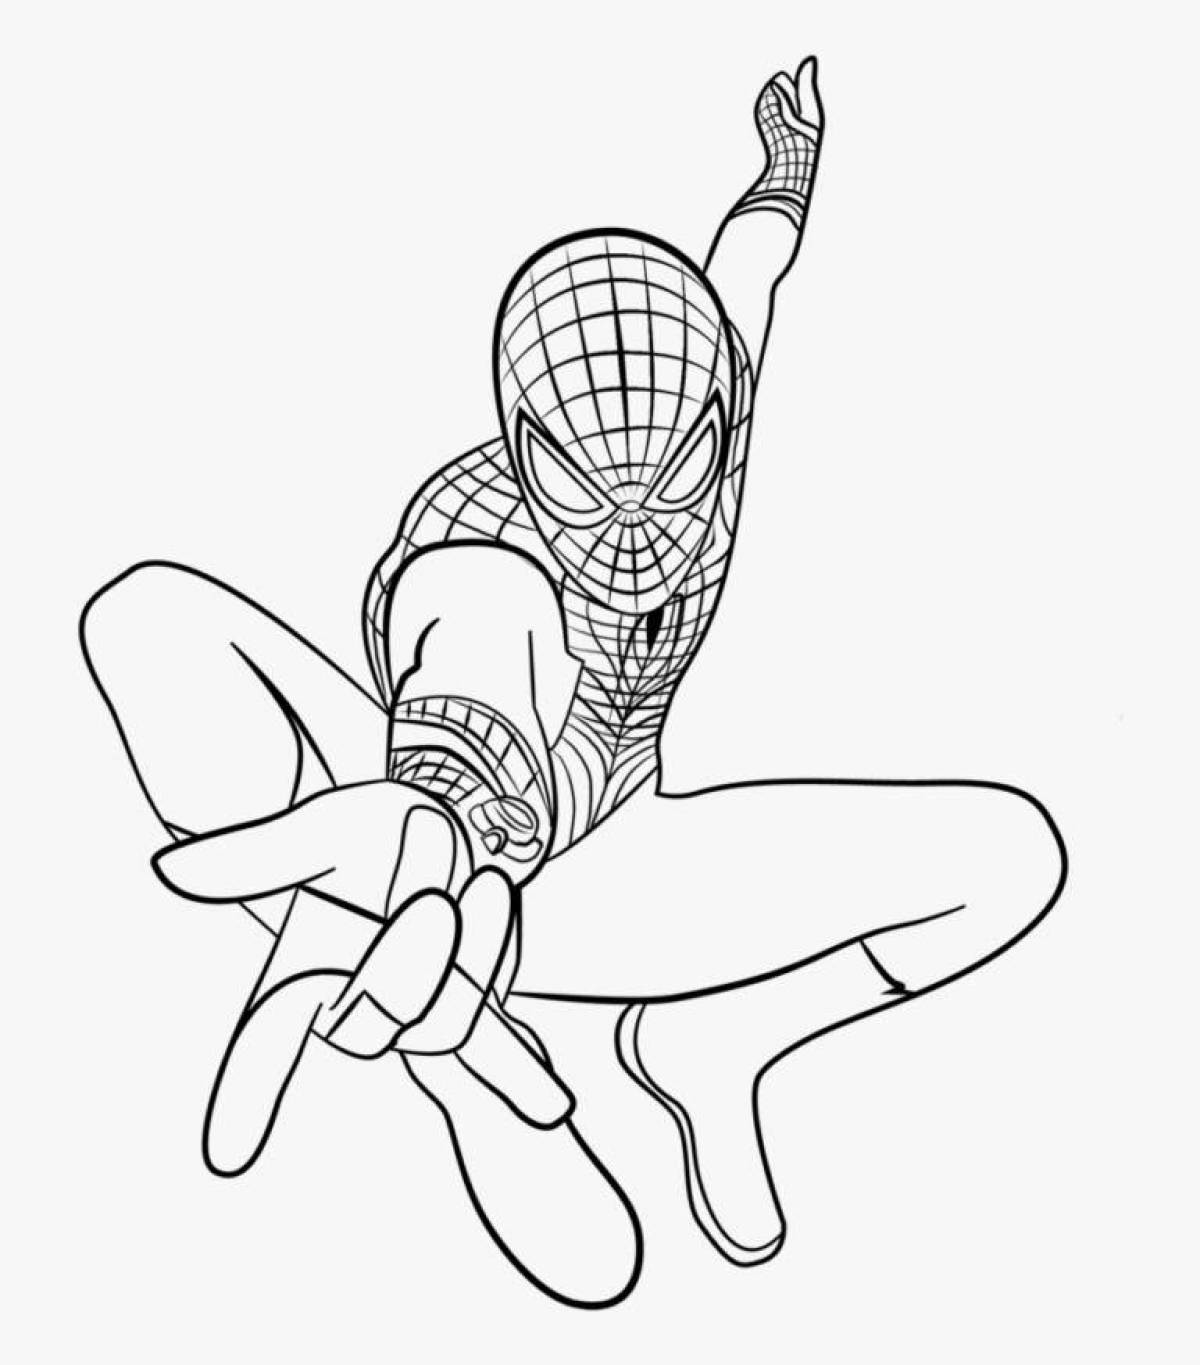 Сложный рисунок человека-паука